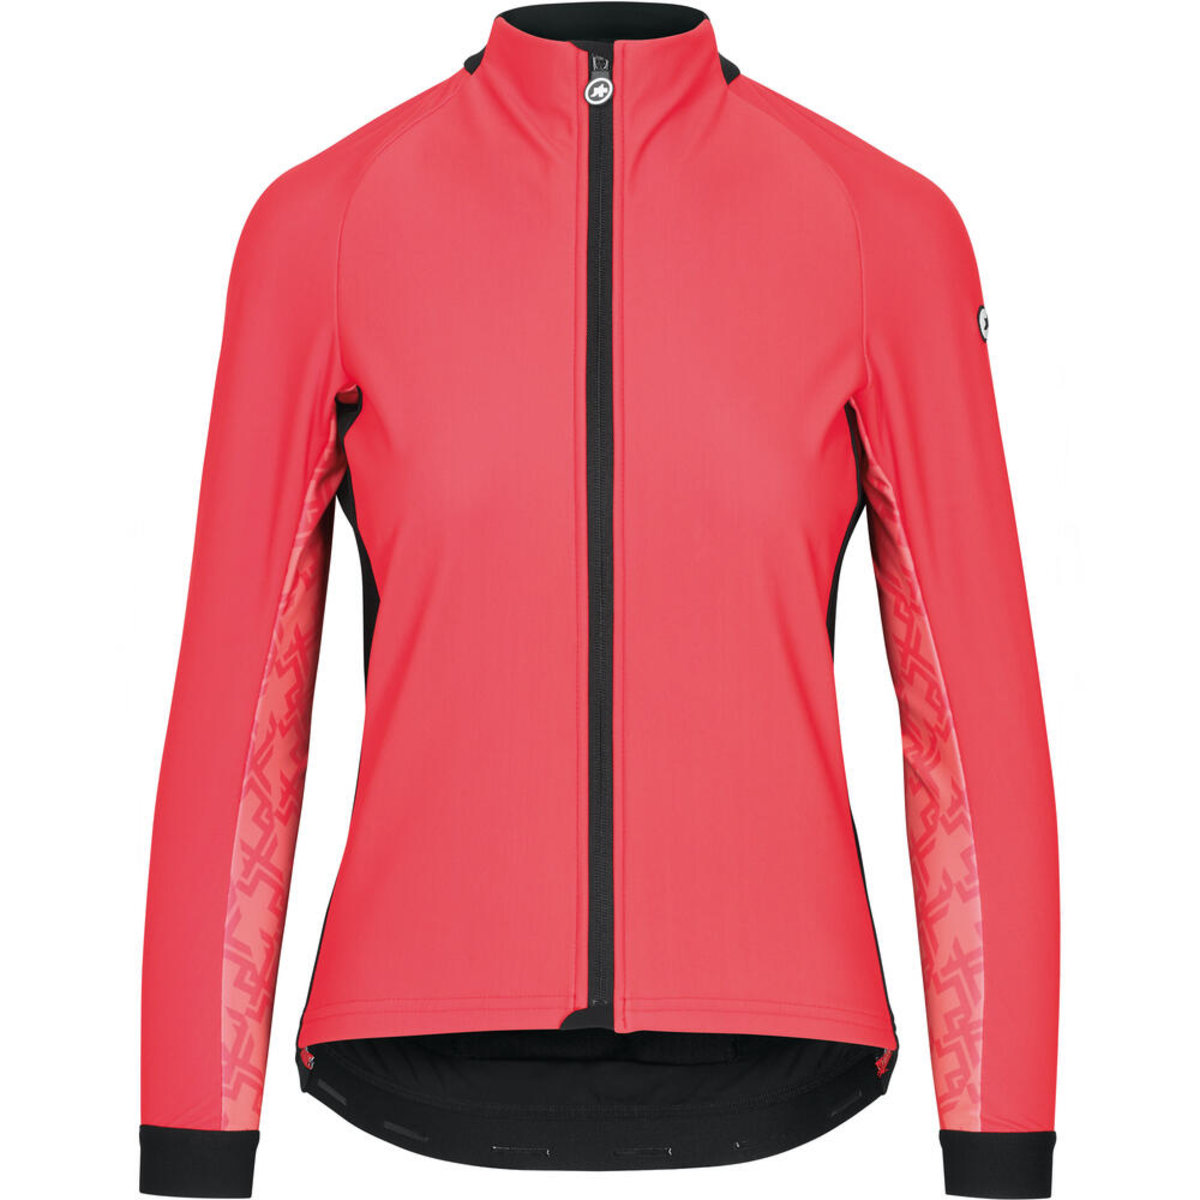 Куртка ASSOS Uma GT Wind Jacket, довг. рукав, женская, рожева, XS